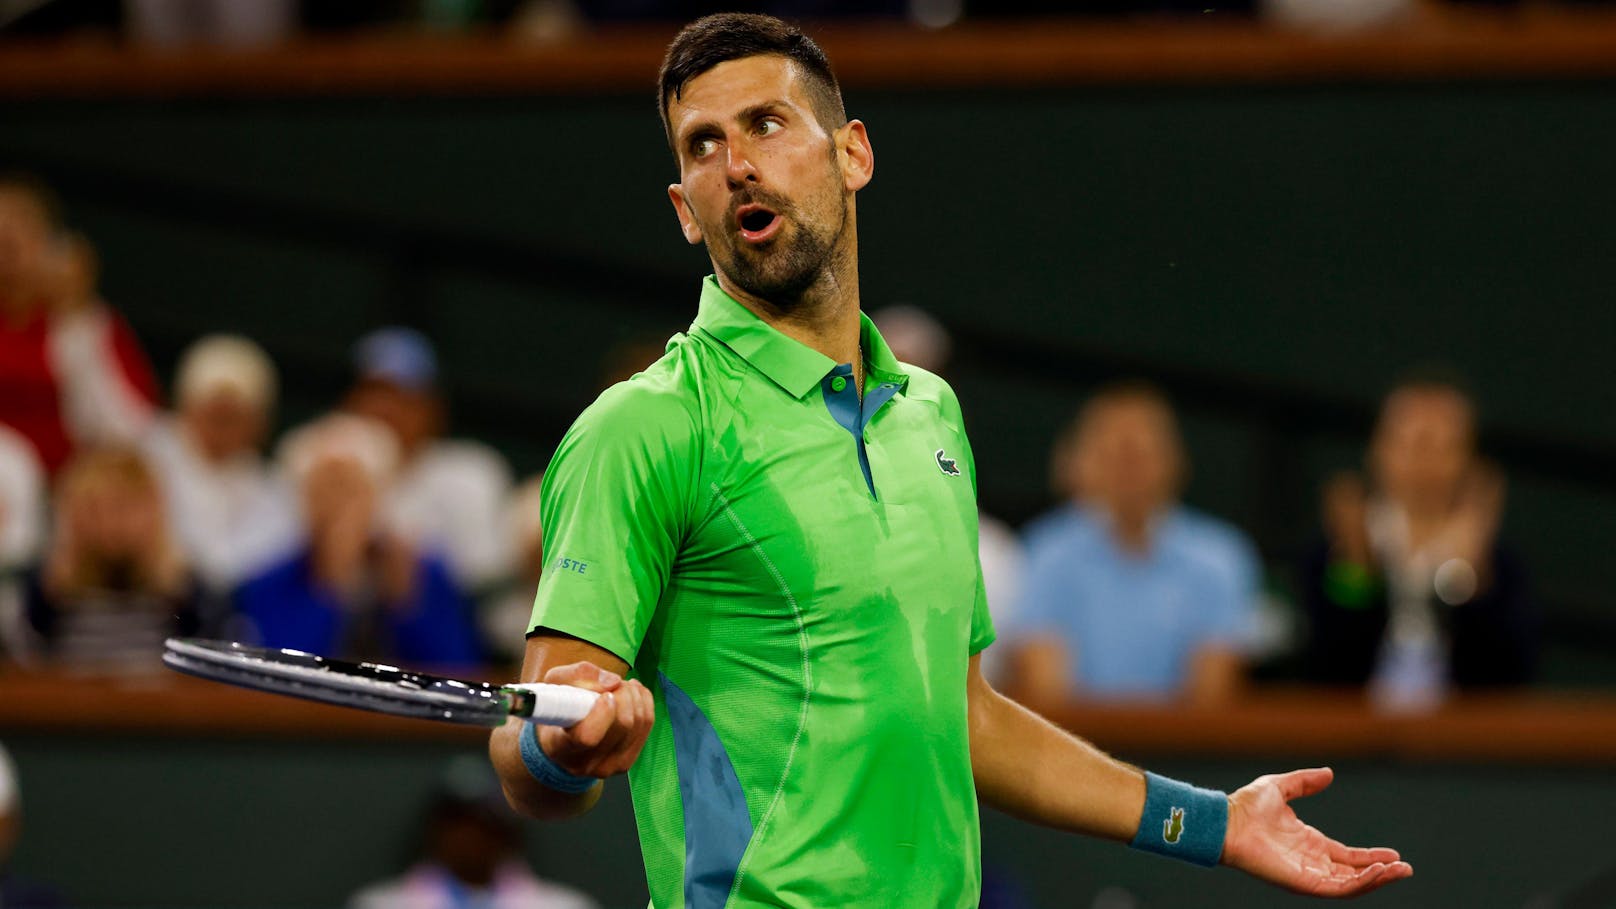 Star-Coach über Djokovic: "Er hat ein mentales Problem"